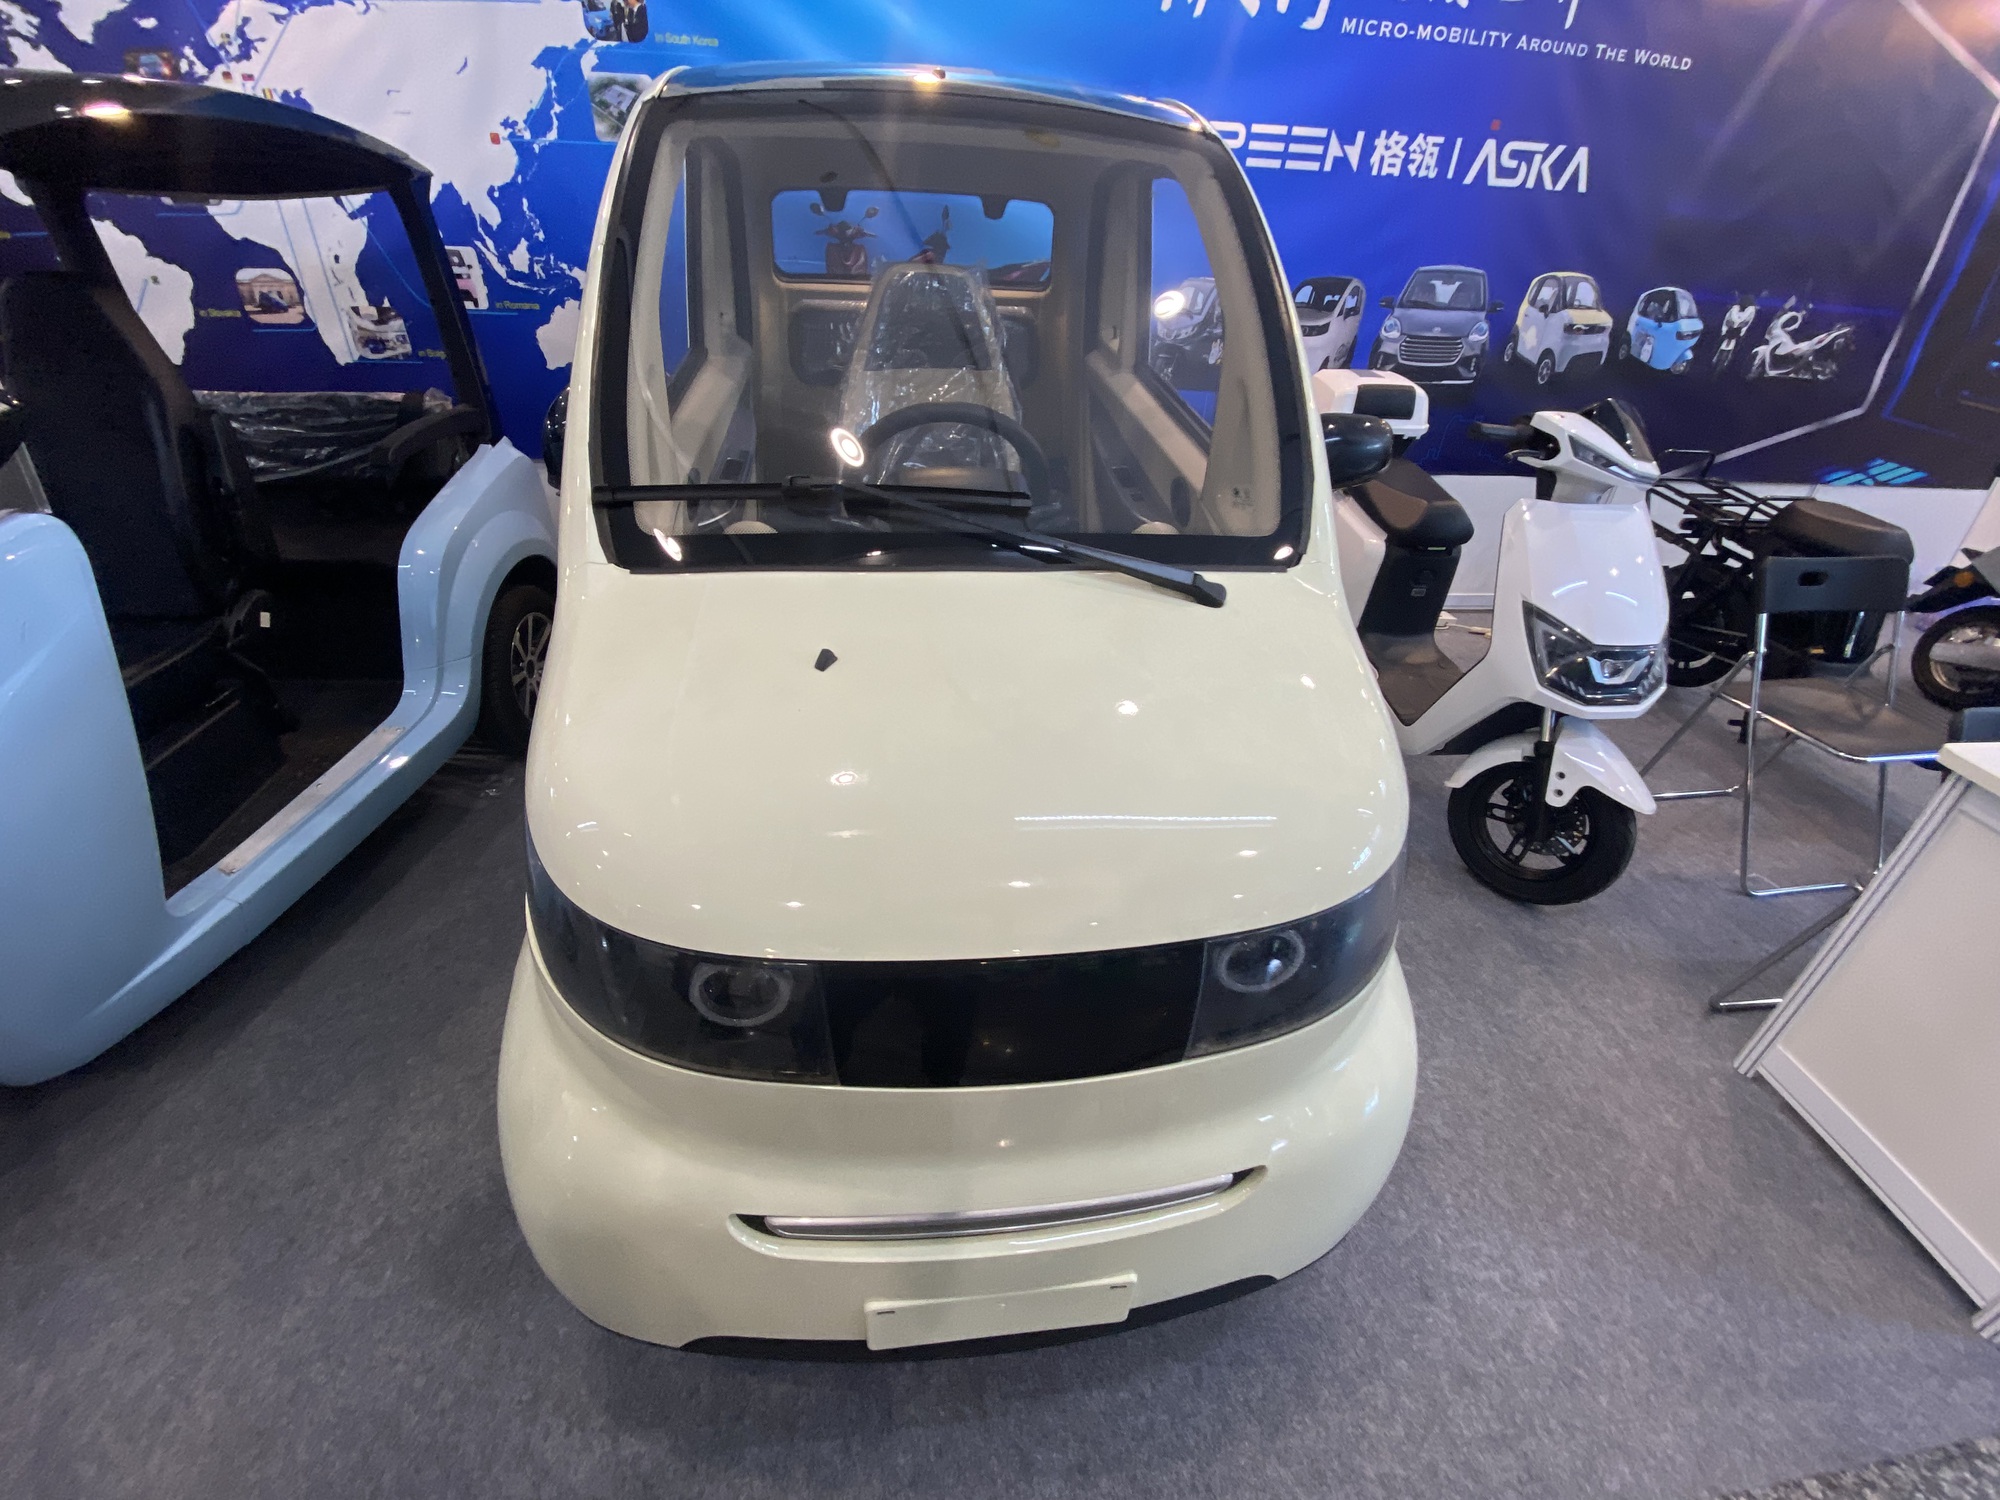 Thêm mẫu ôtô điện Trung Quốc giá rẻ - Ảnh 2.